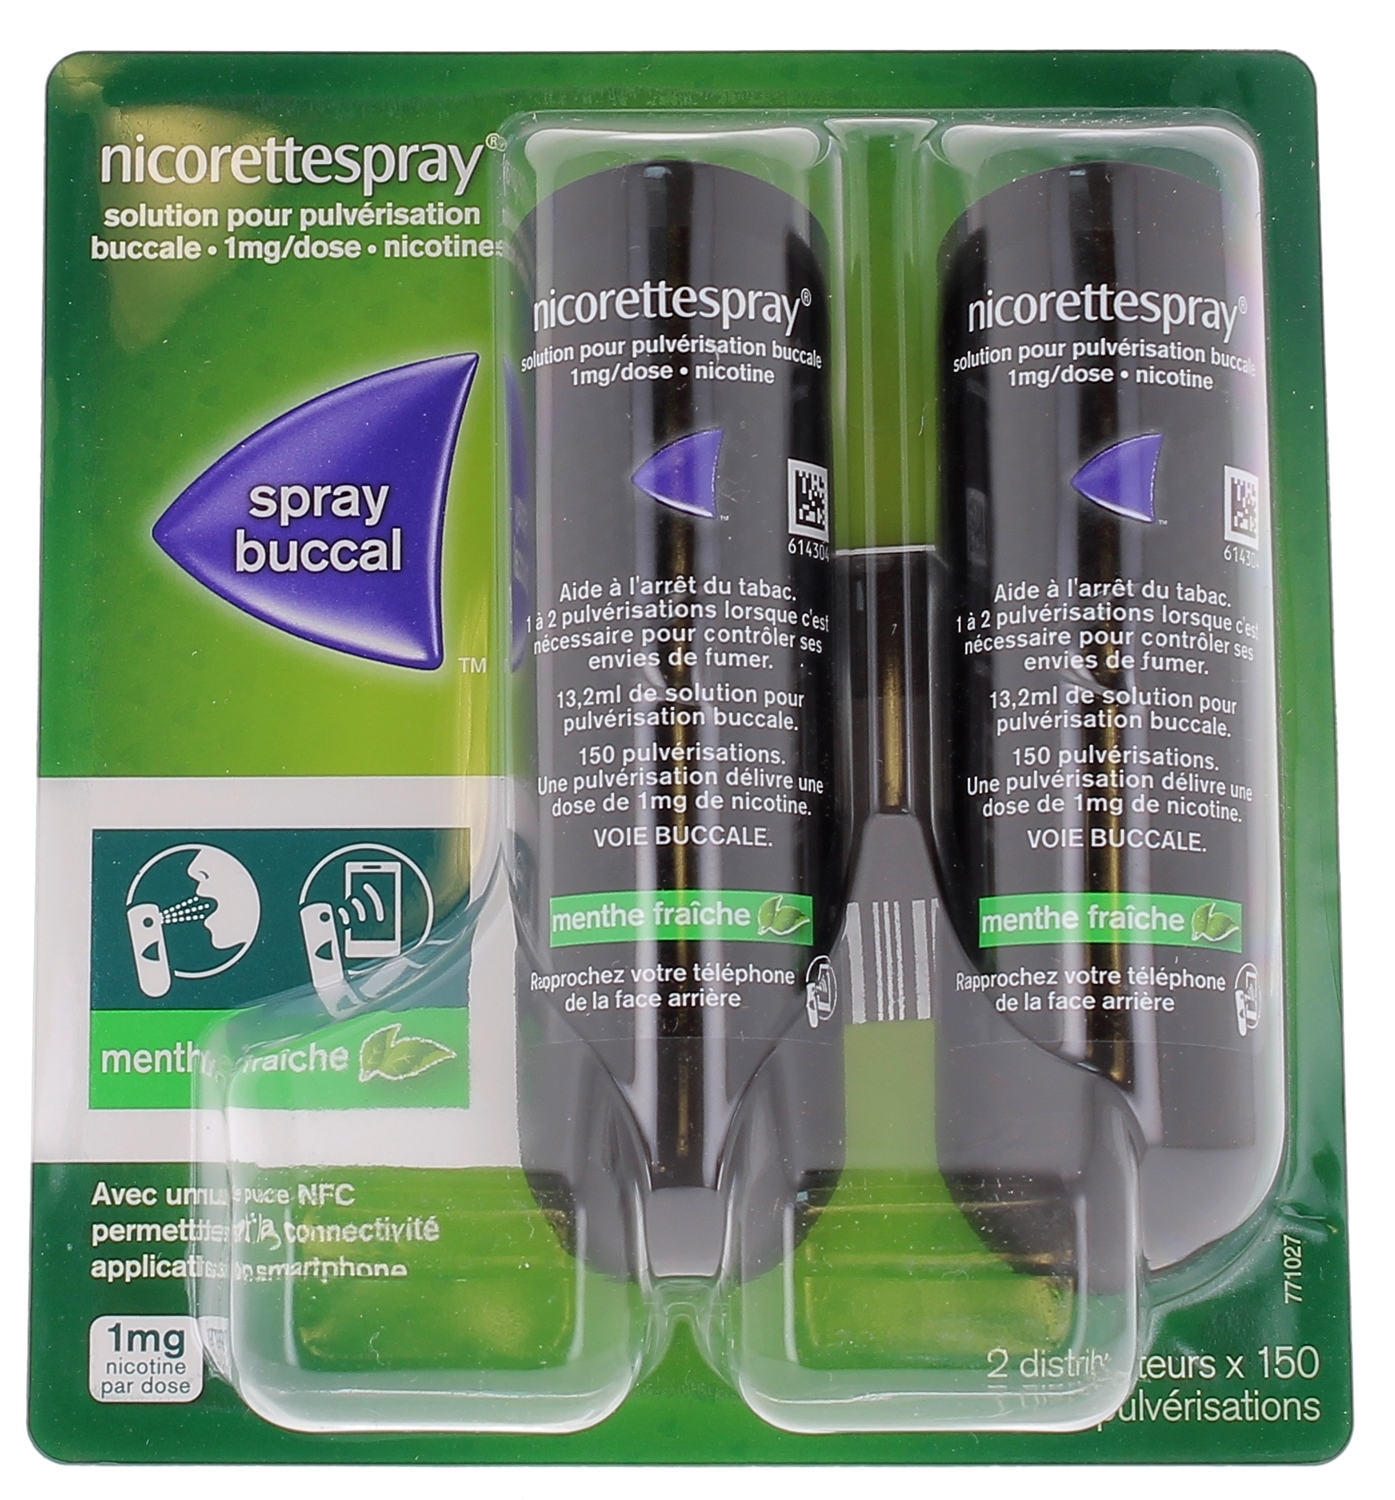 Nicorettespray 1mg/dose, solution pour pulvérisation buccale menthe fraîche - 2 sprays